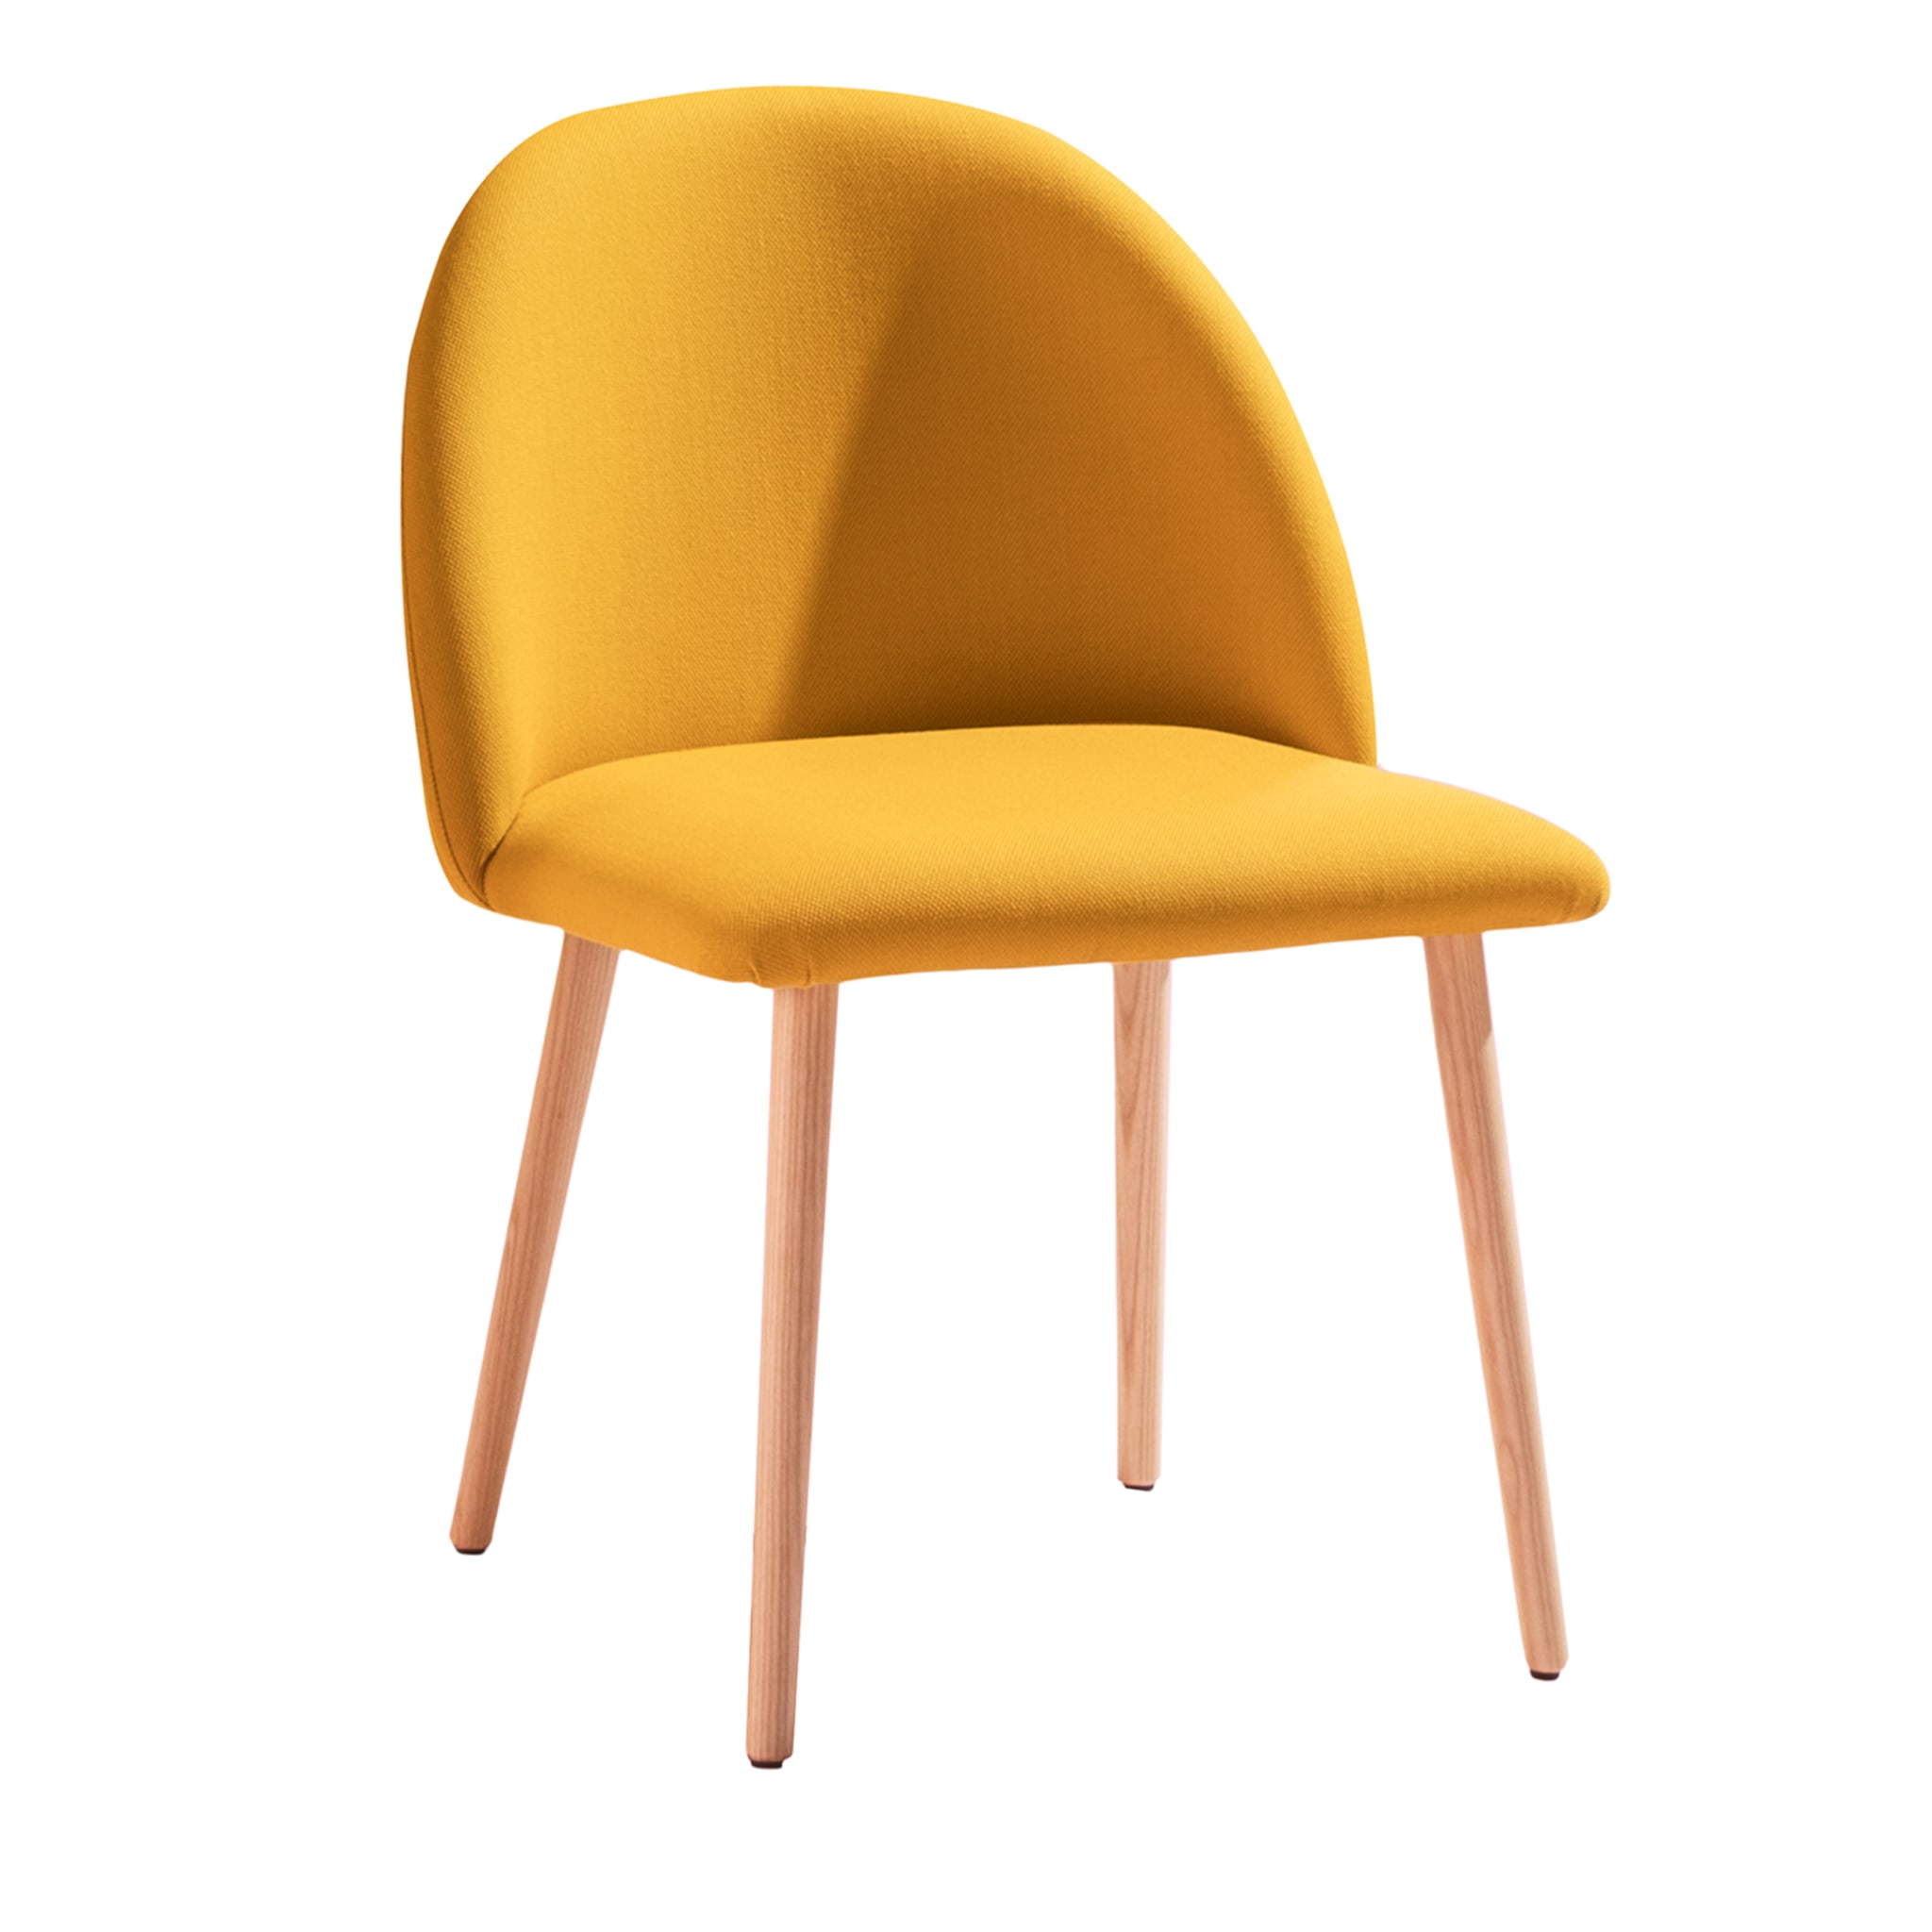 Bloom Yellow Chair #1 - Hauptansicht